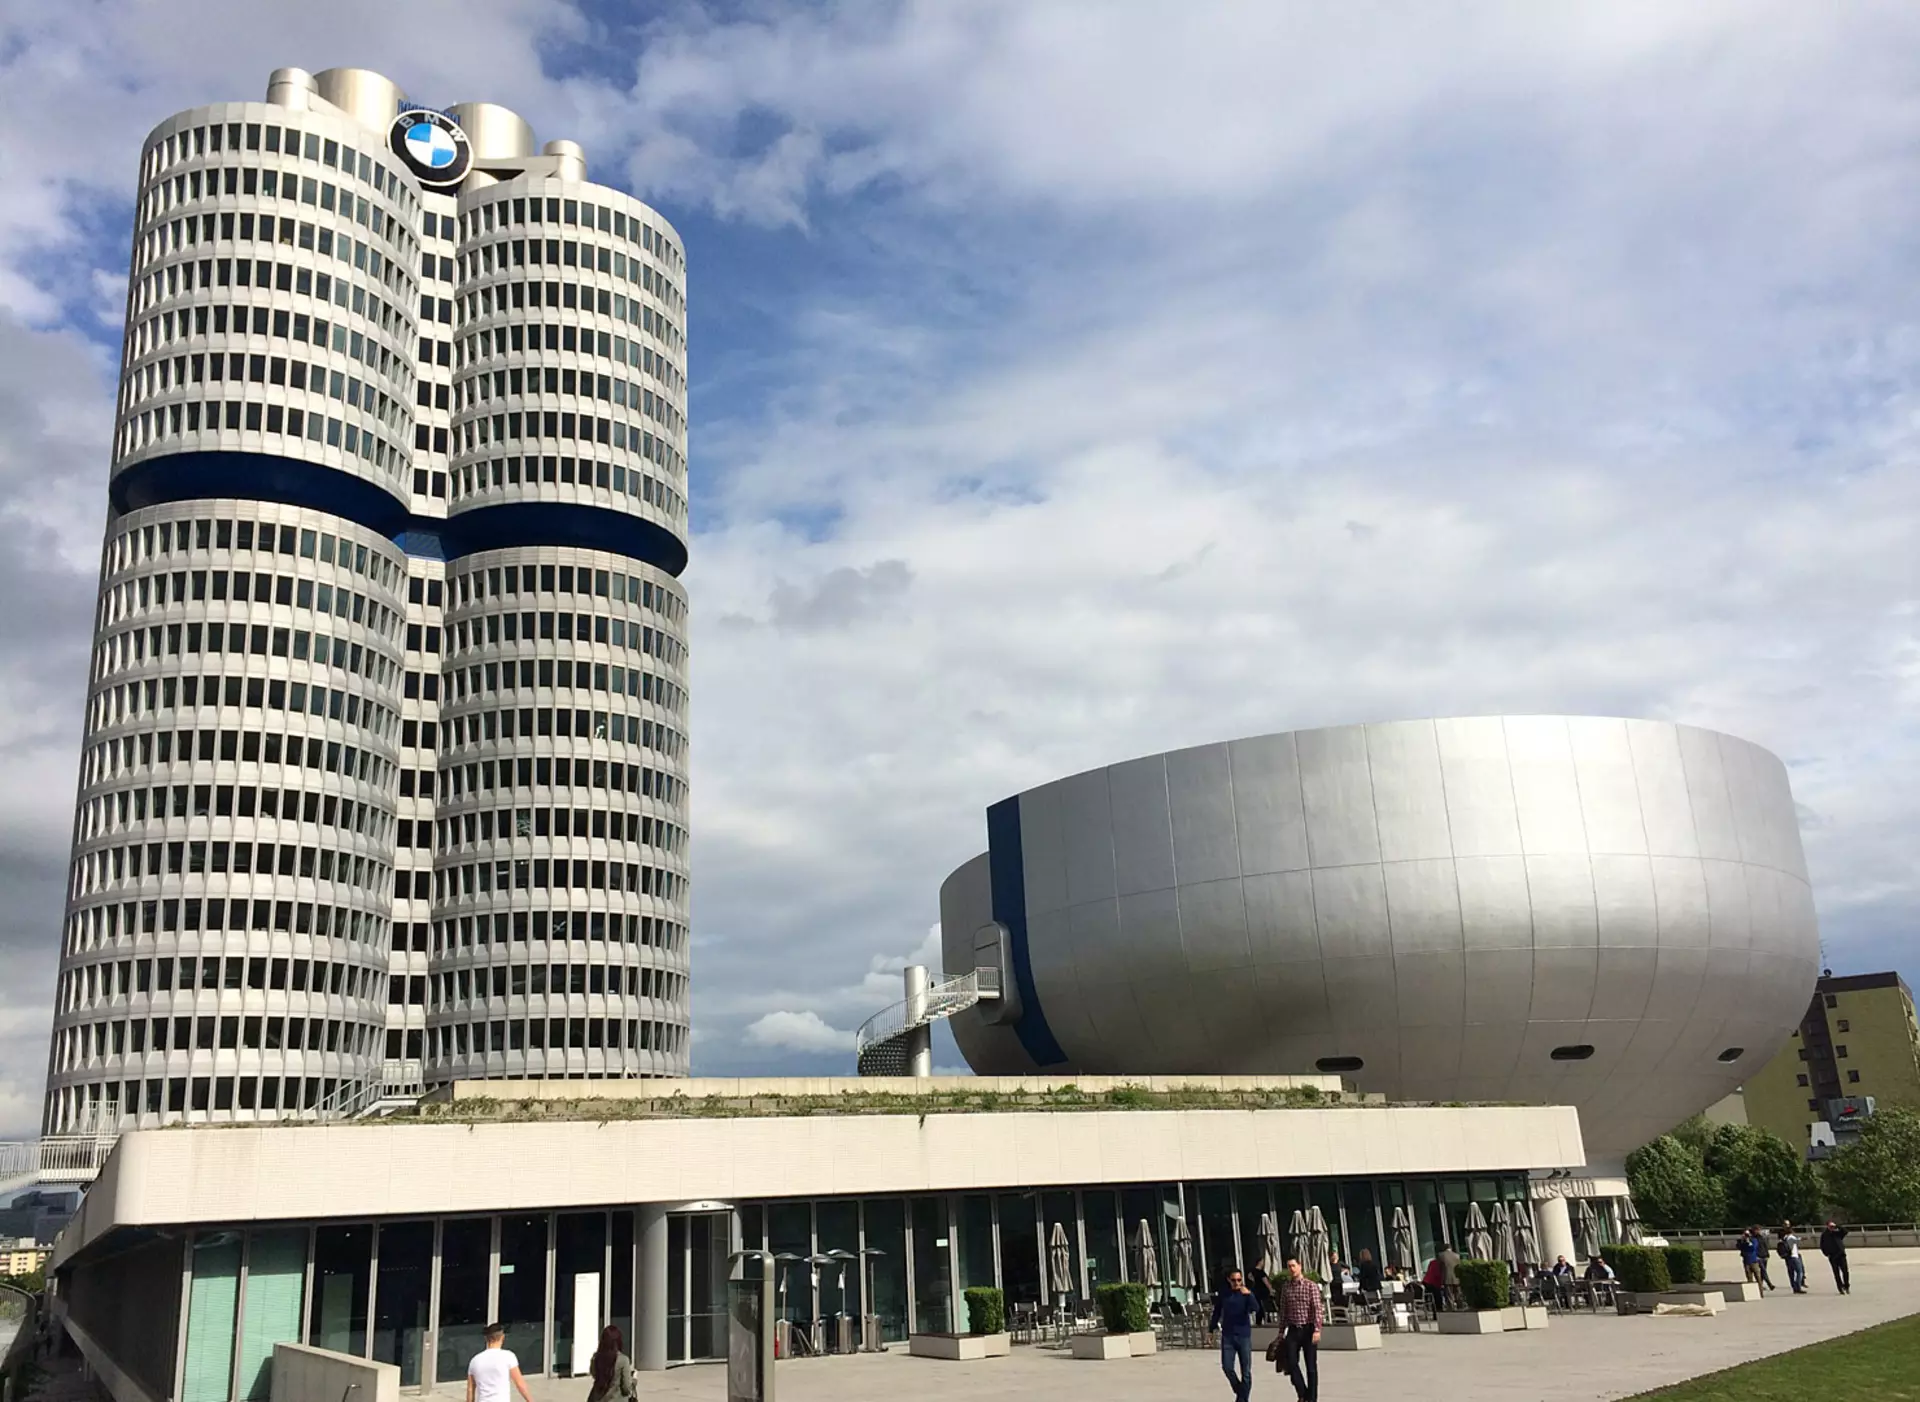 im urlaub auf dem Bauernhof im Umland von München die Ausstellung und das Museum BMW-Welt in München besuchen